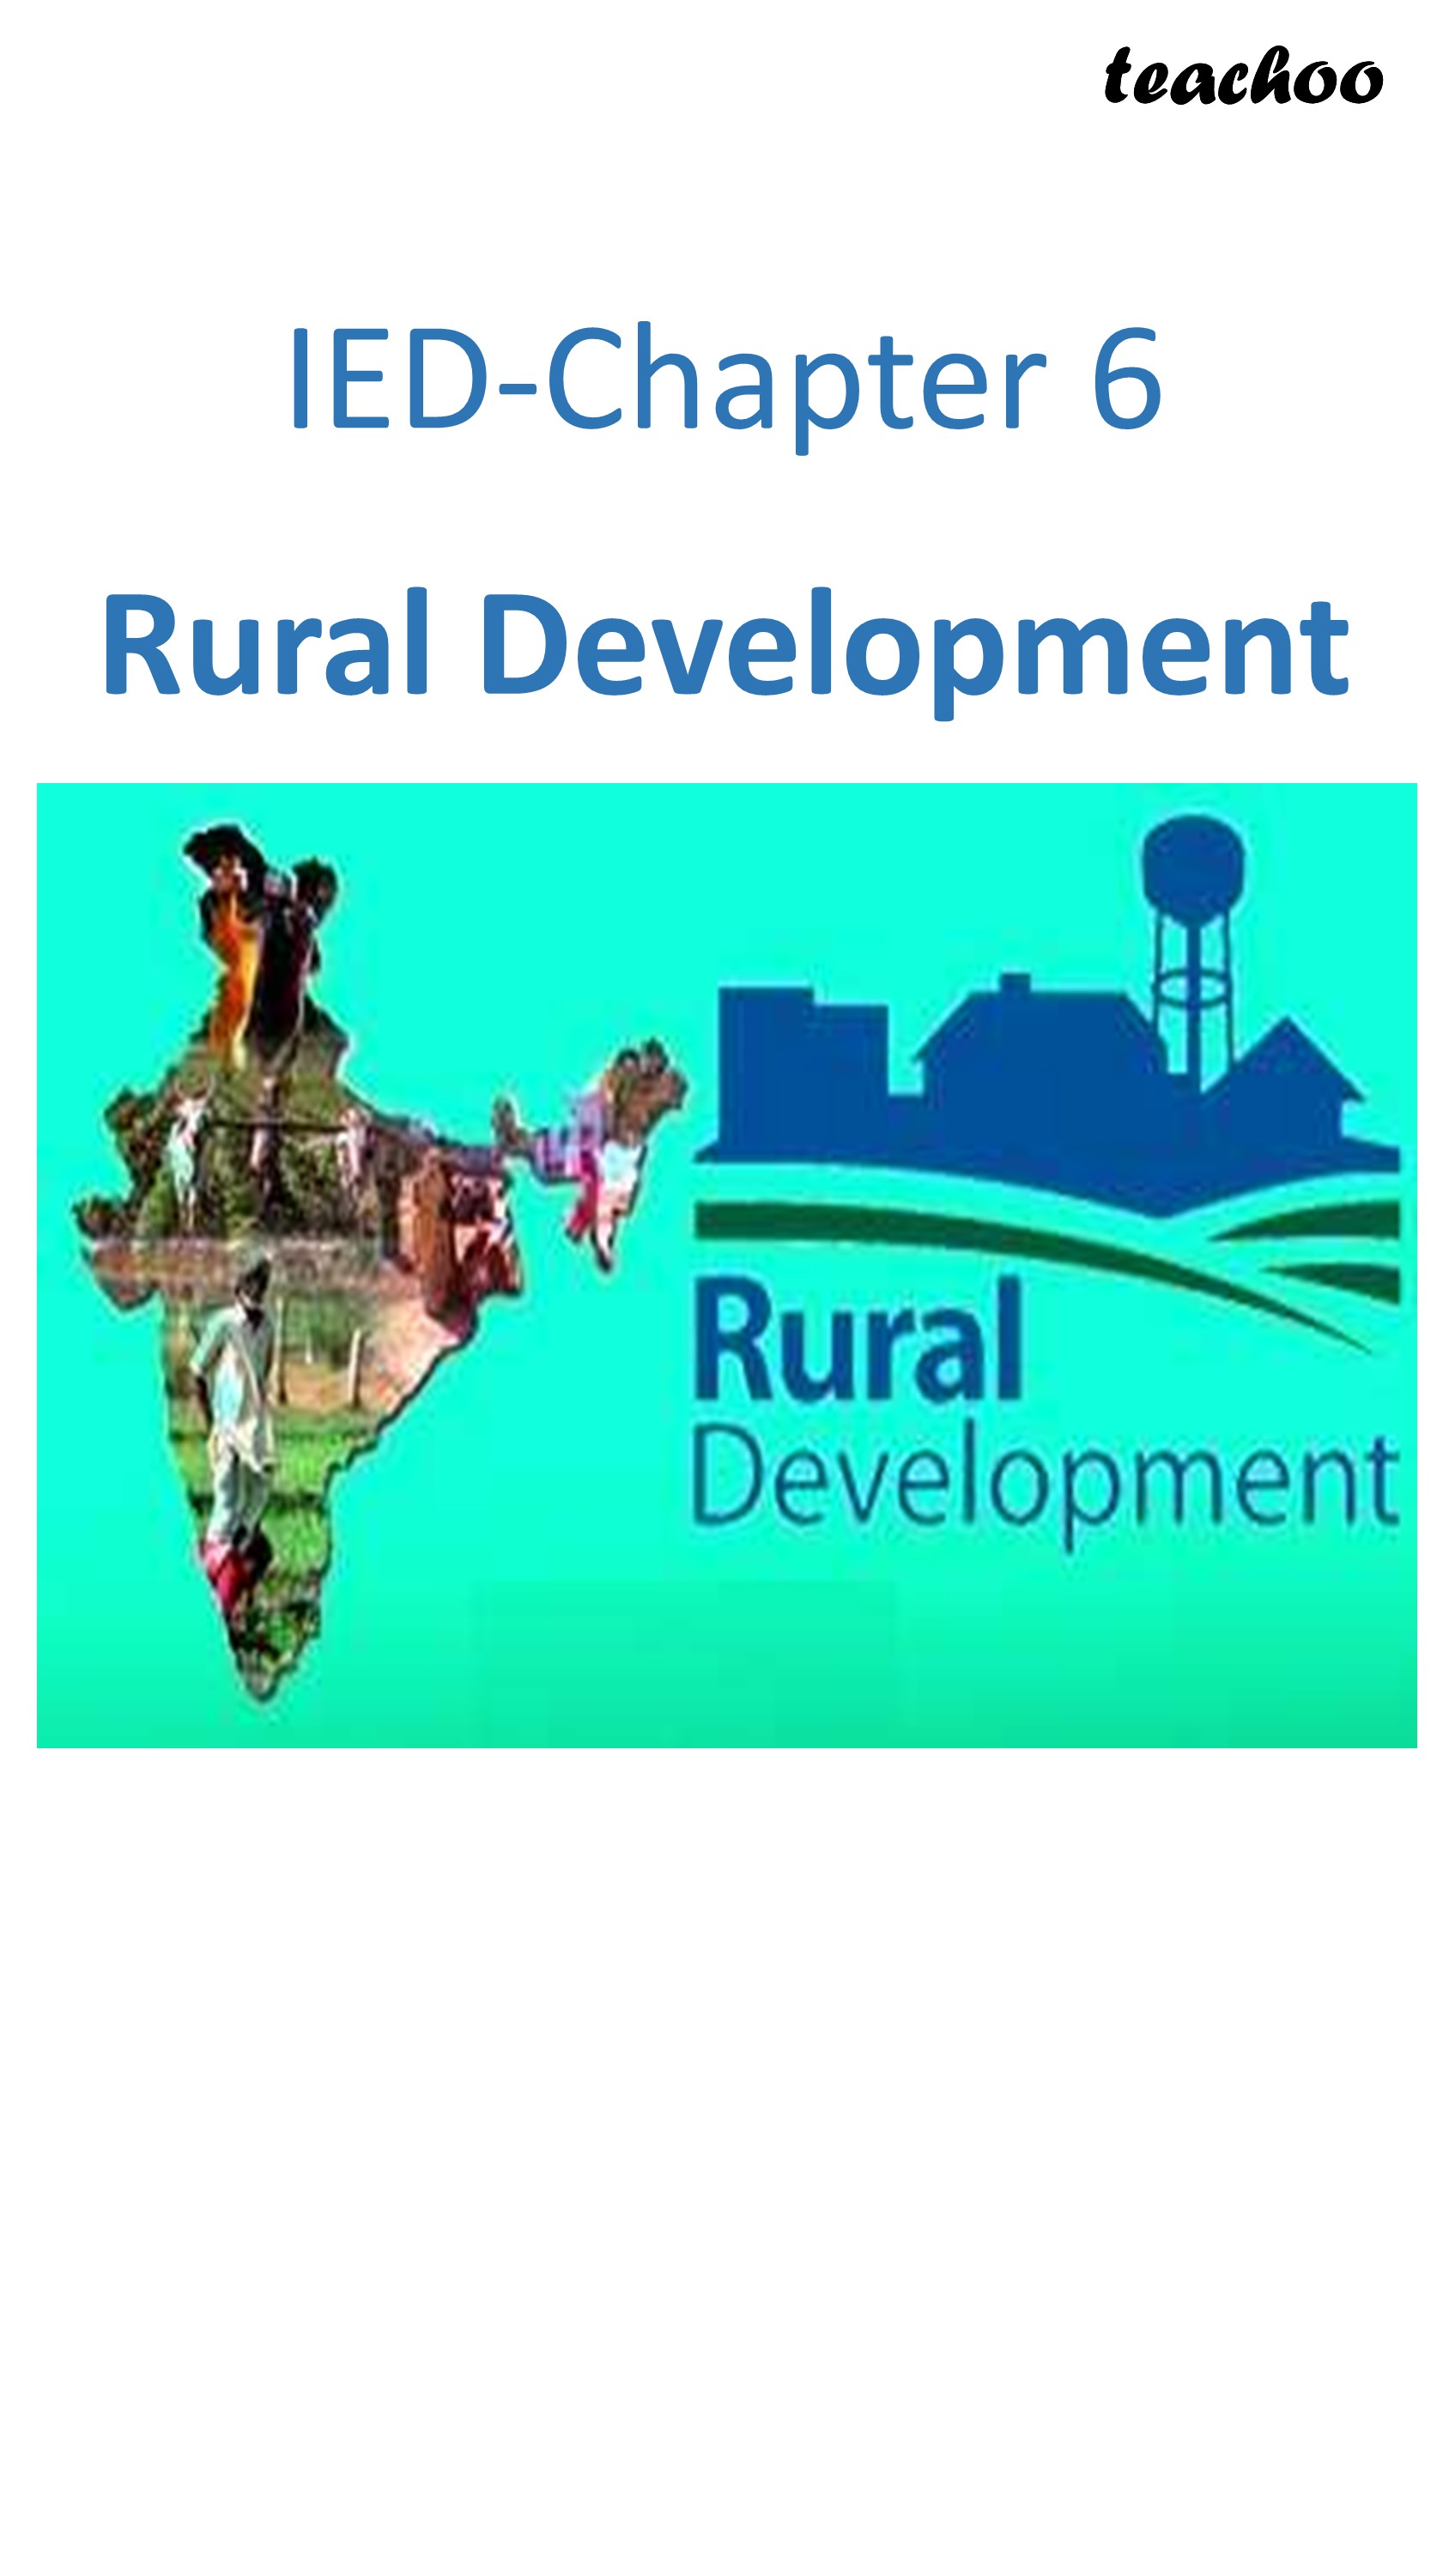 short case study on rural development class 12